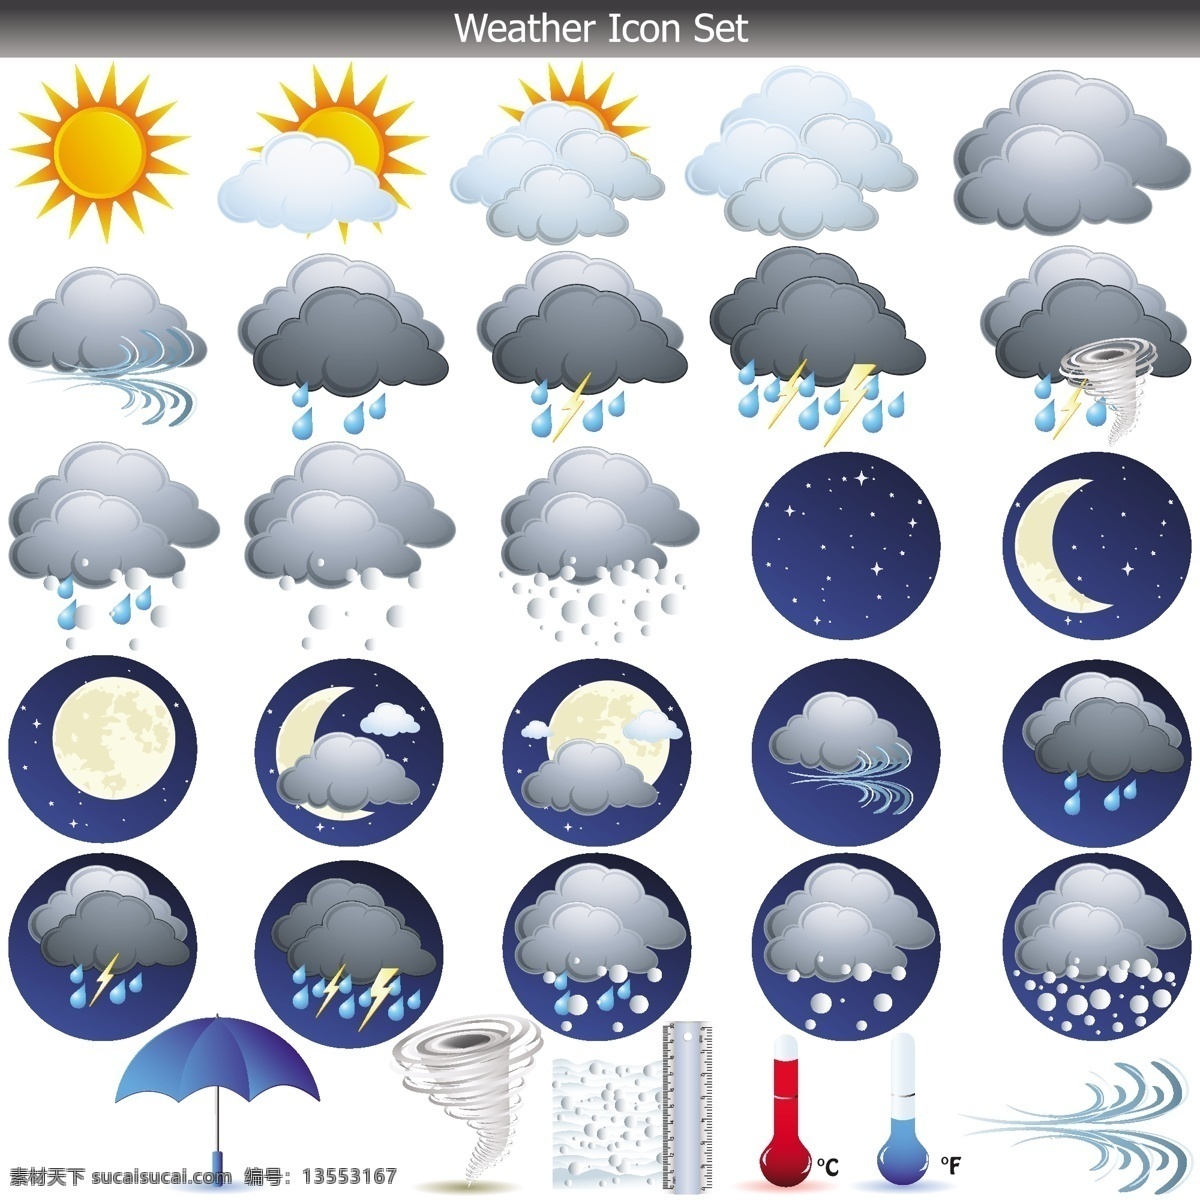 天气预报 图标 图像 部分 图标矢量 矢量图标打雷 龙卷风 湿 白色